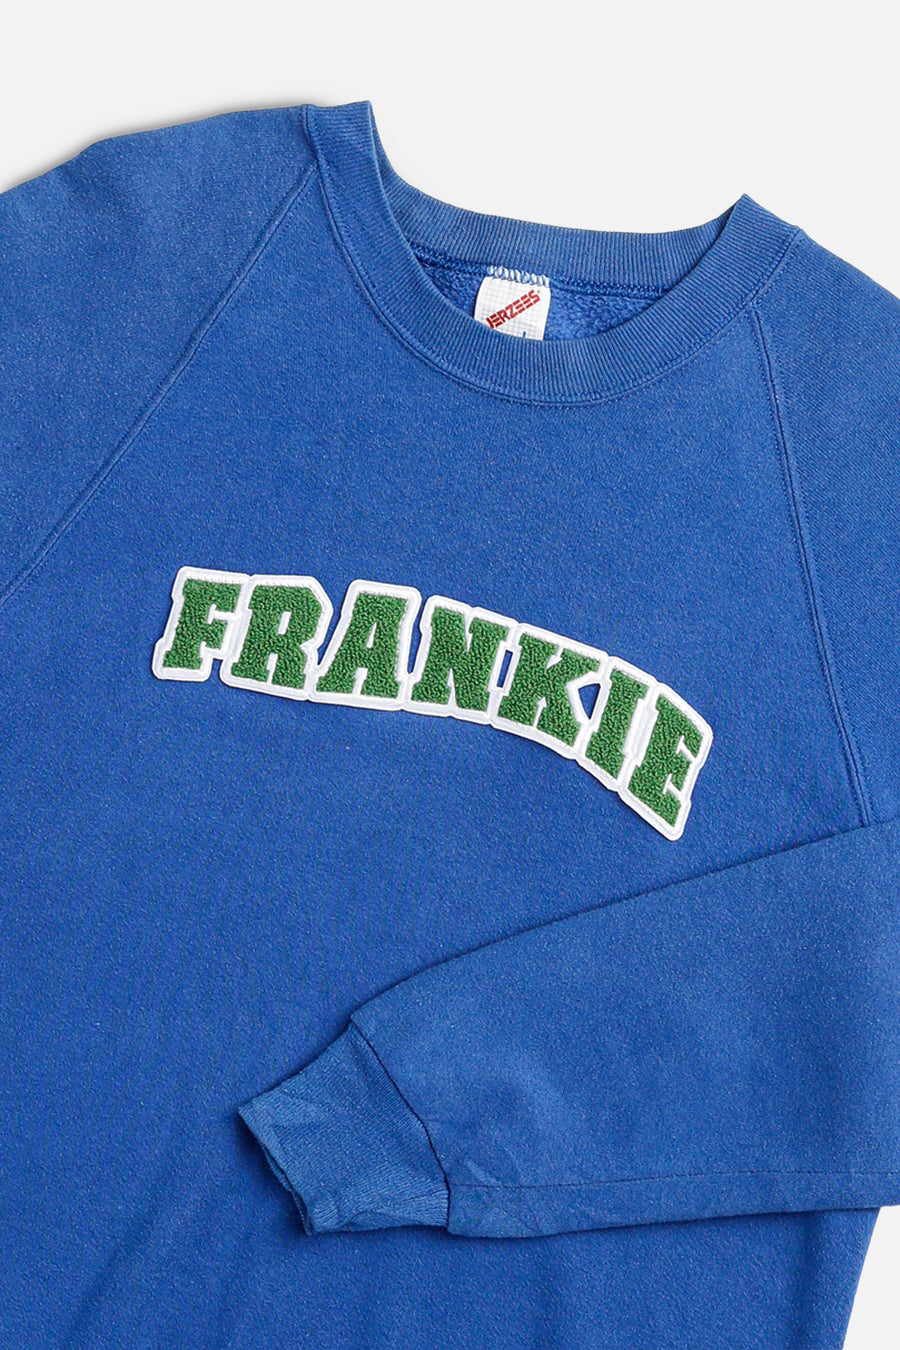 Frankie Upcycled Varsity Sweatshirt - S, XL